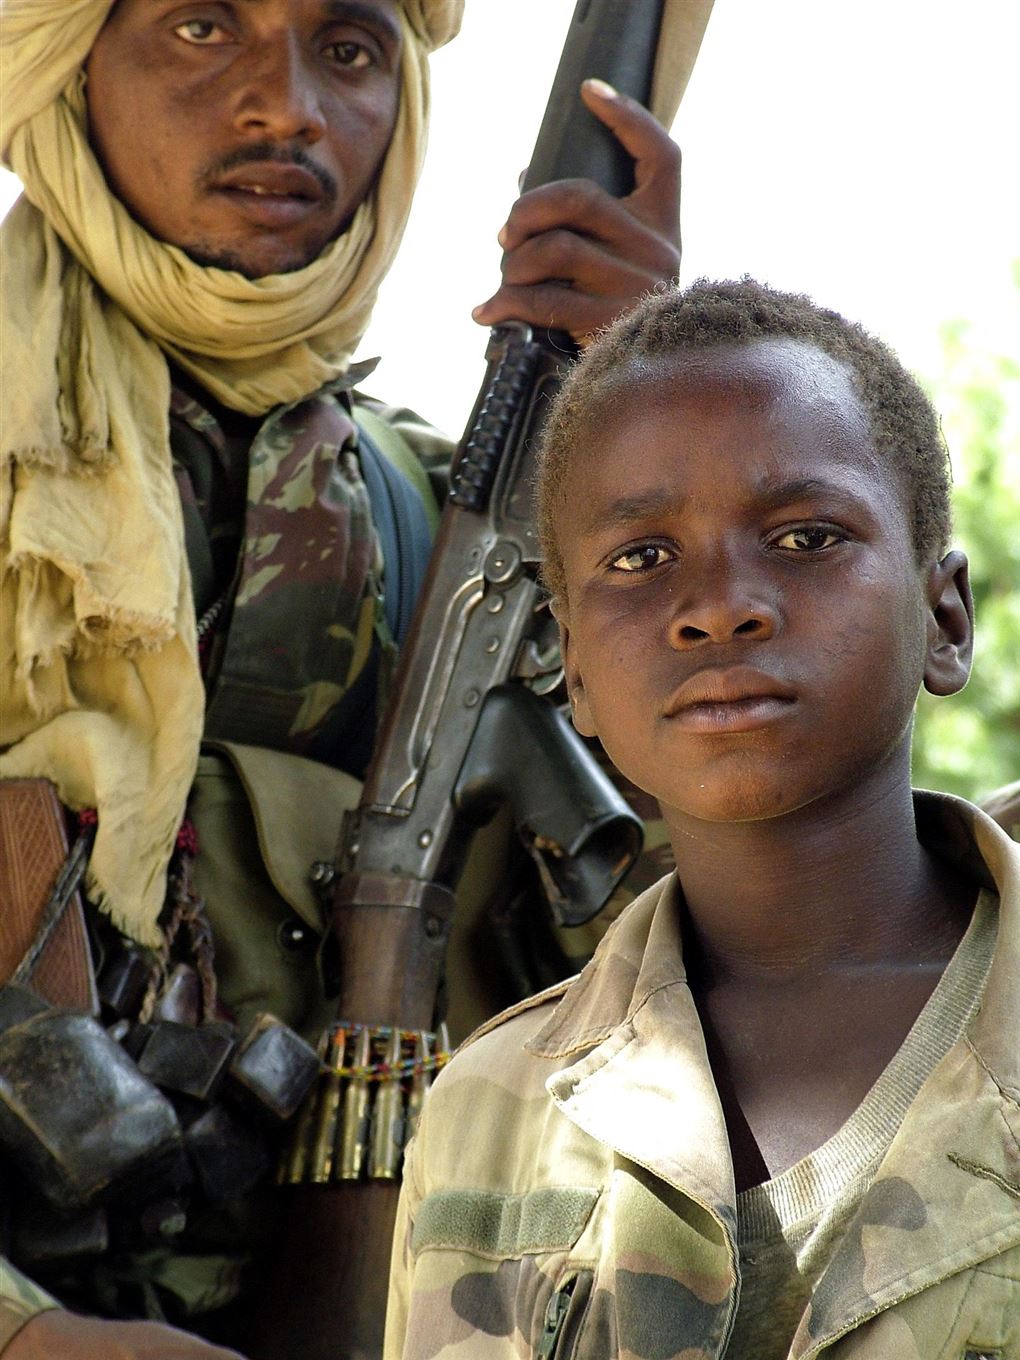 En ung dreng ved siden af en voksen soldat.